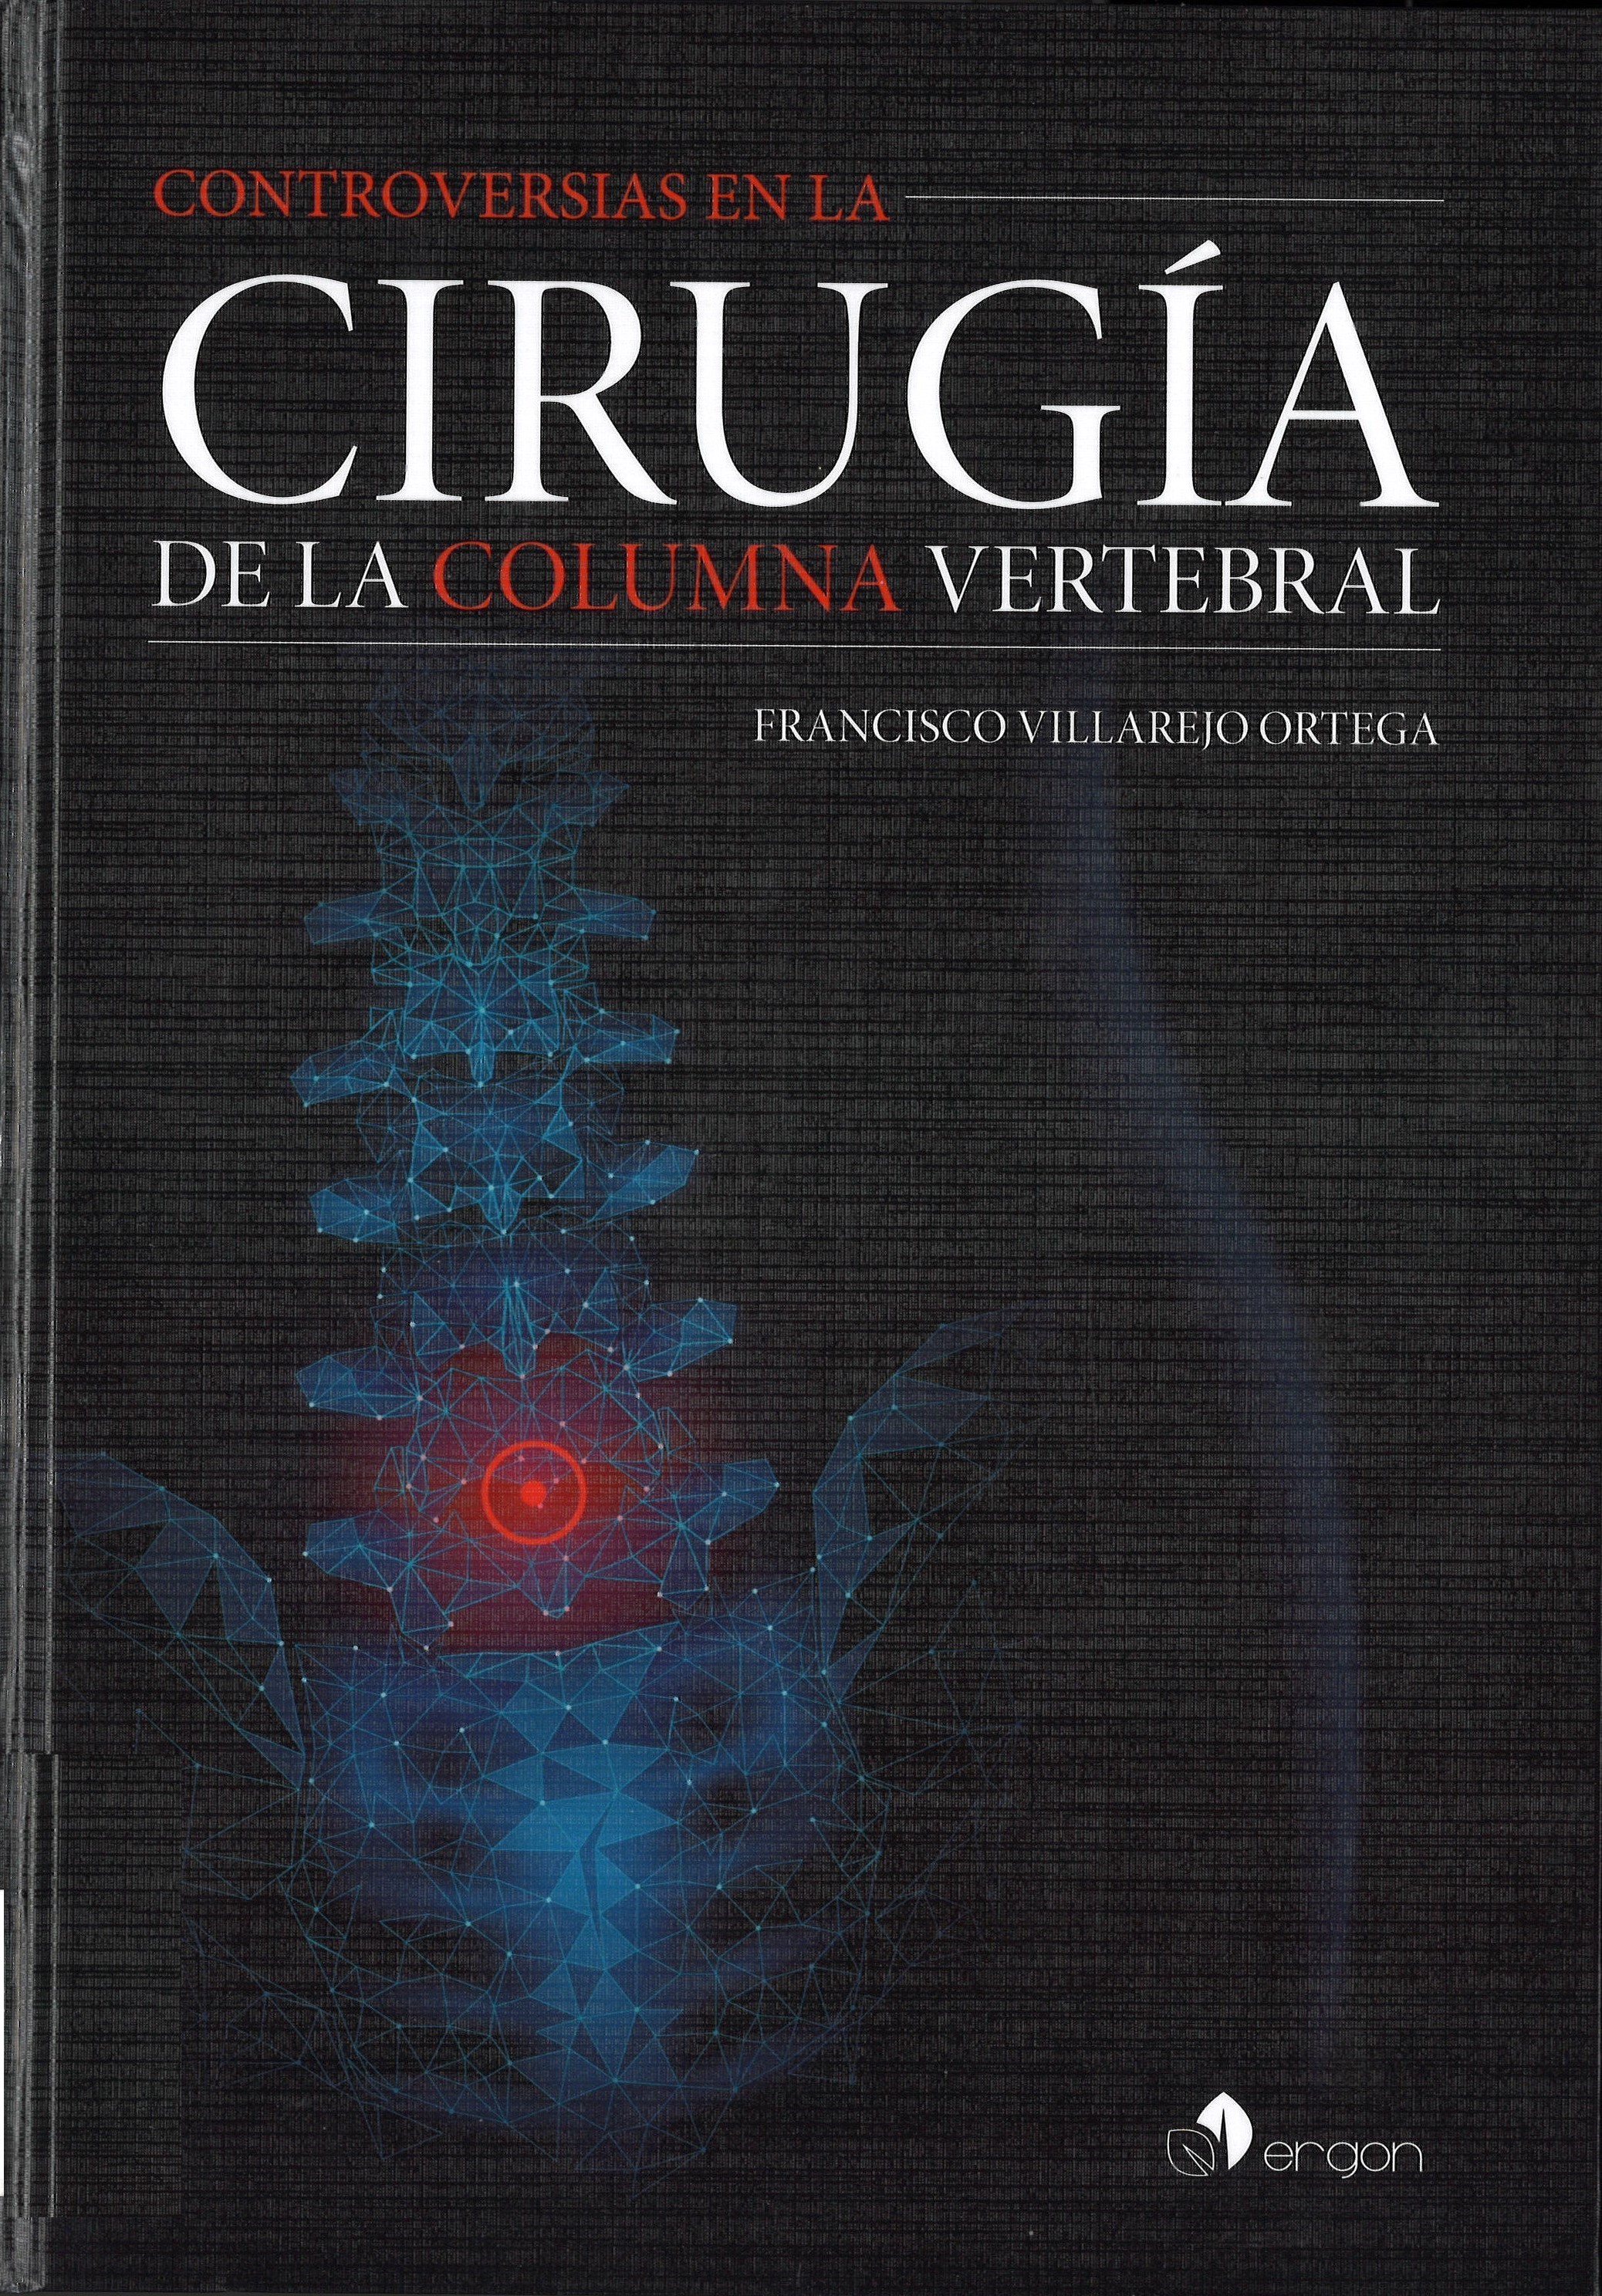 Imagen de portada del libro Controversias en la cirugía de la columna vertebral